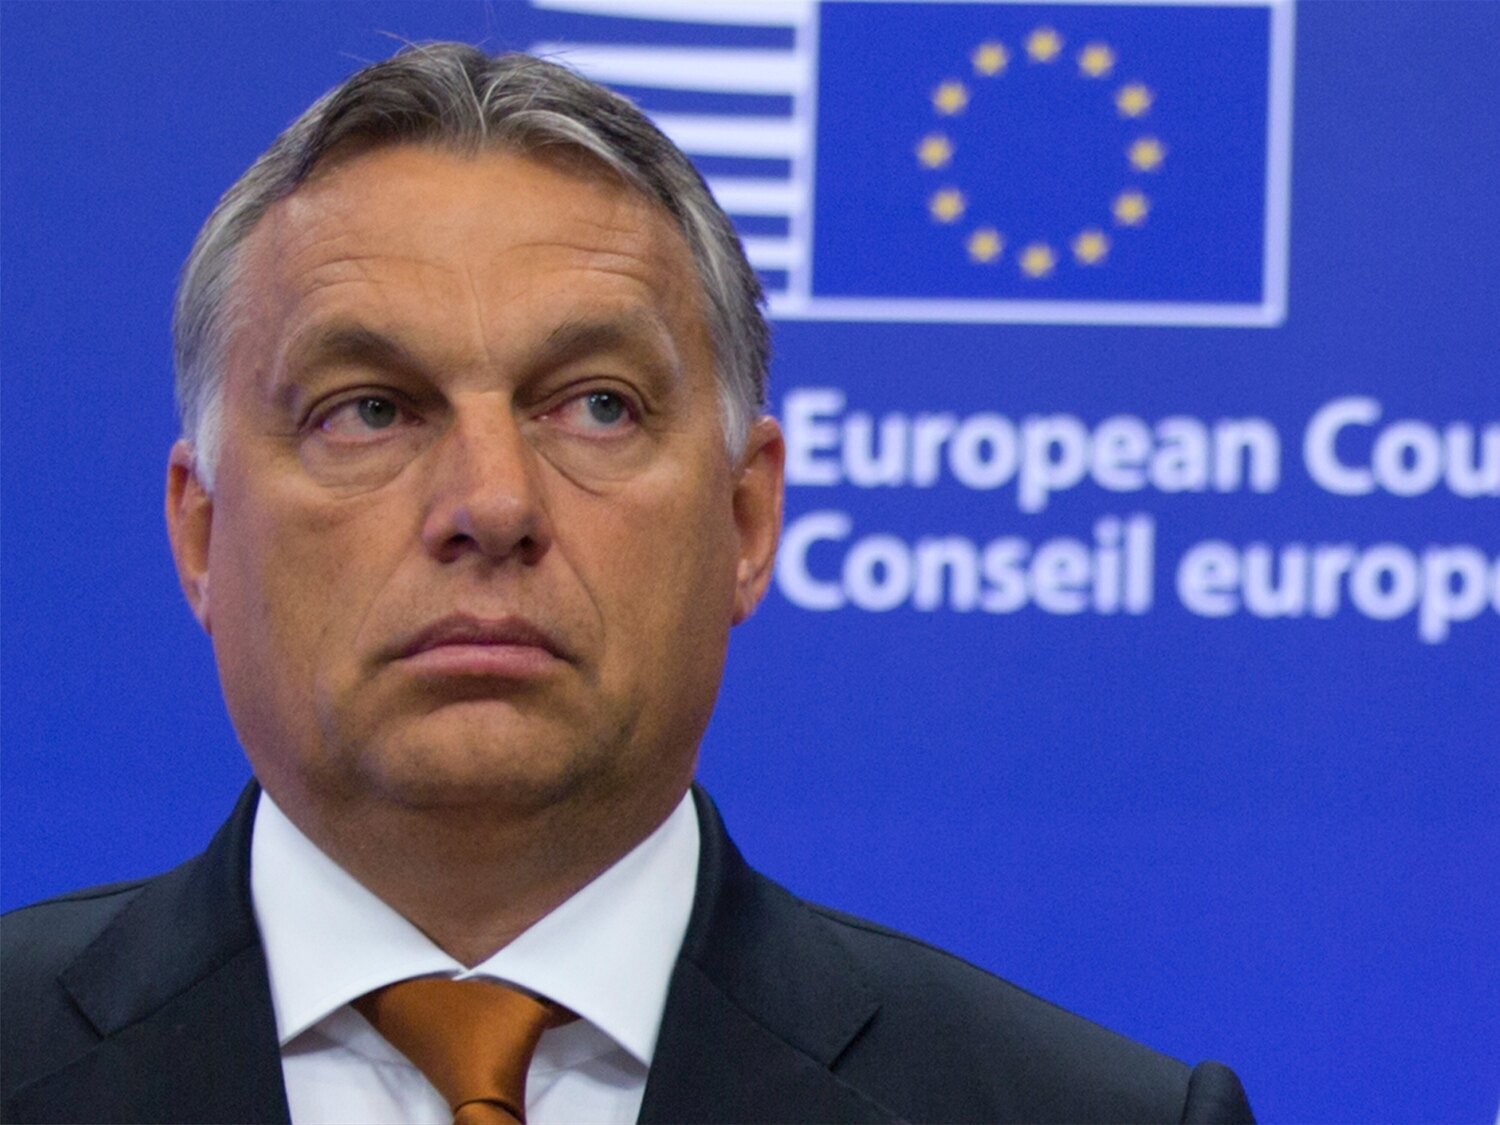 Viktor Orbán no irá a Munich tras el veto de la UEFA a la bandera LGTBI y pide aceptar la decisión